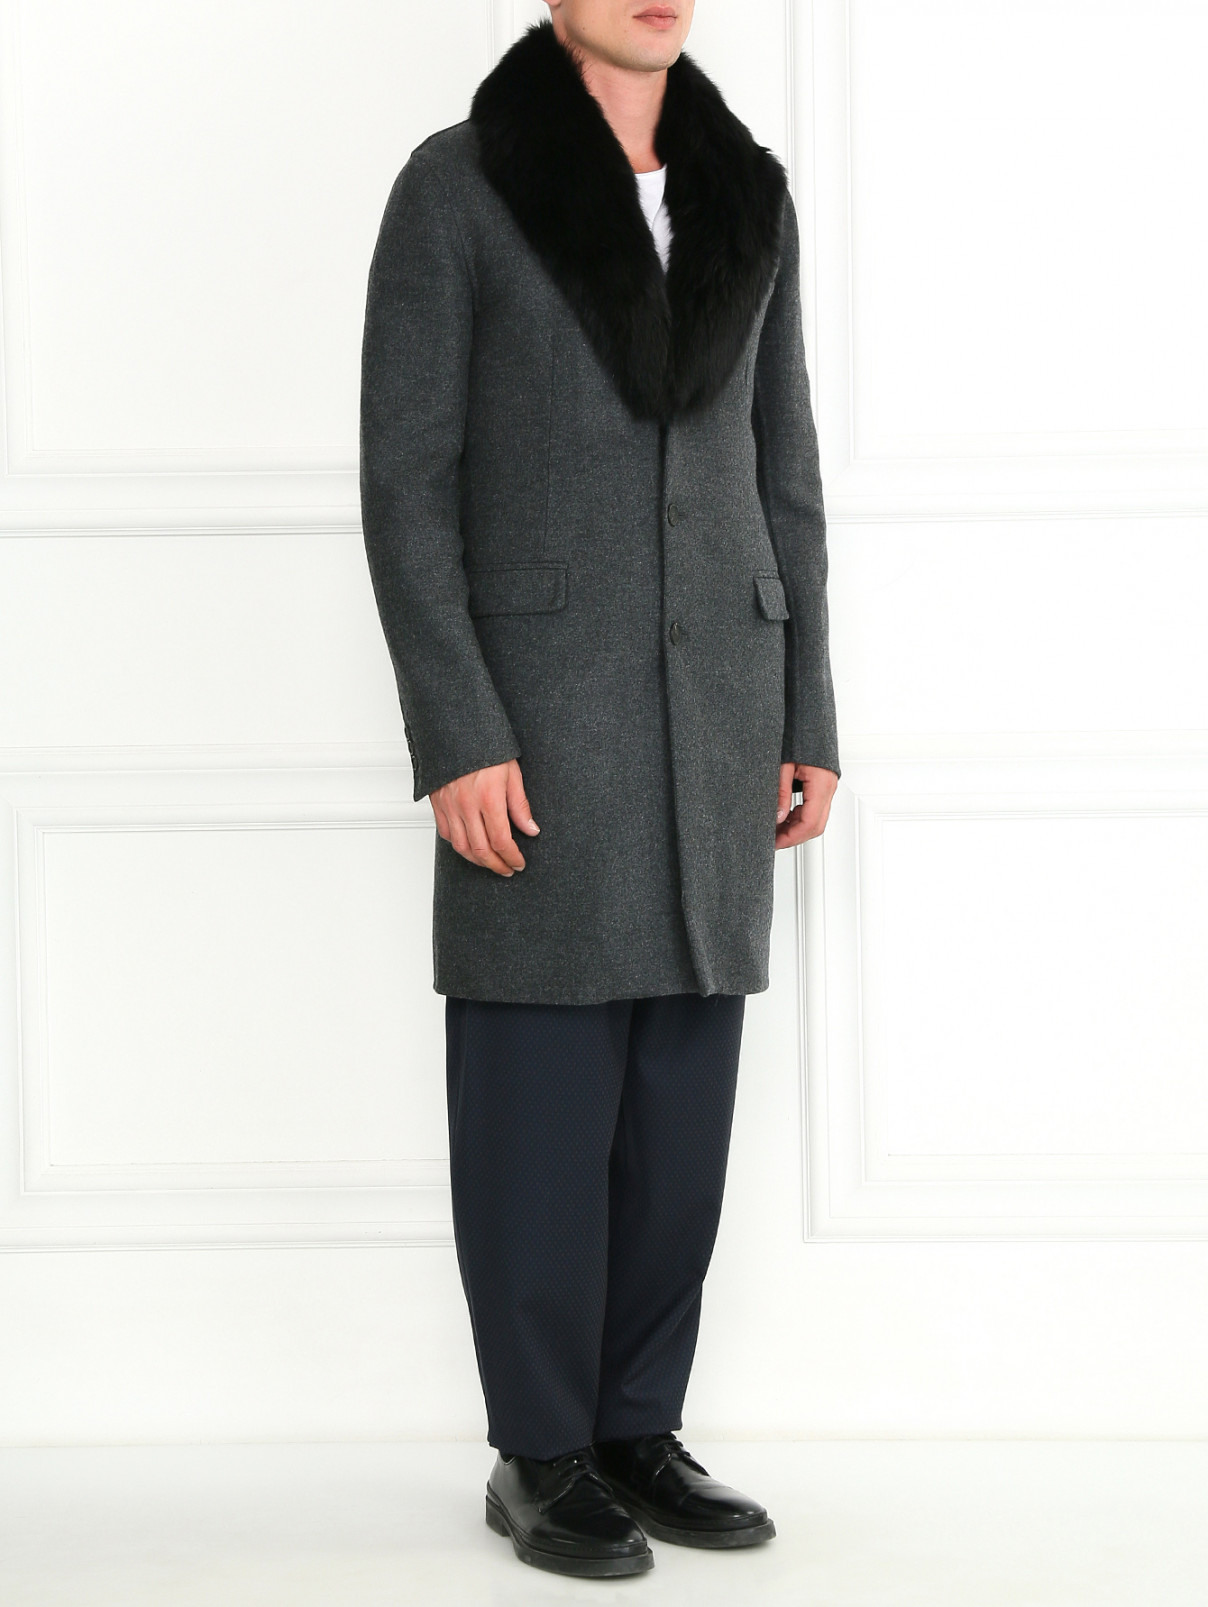 Пальто из шерсти с пуховым подкладом Ermanno Scervino  –  Модель Общий вид  – Цвет:  Серый